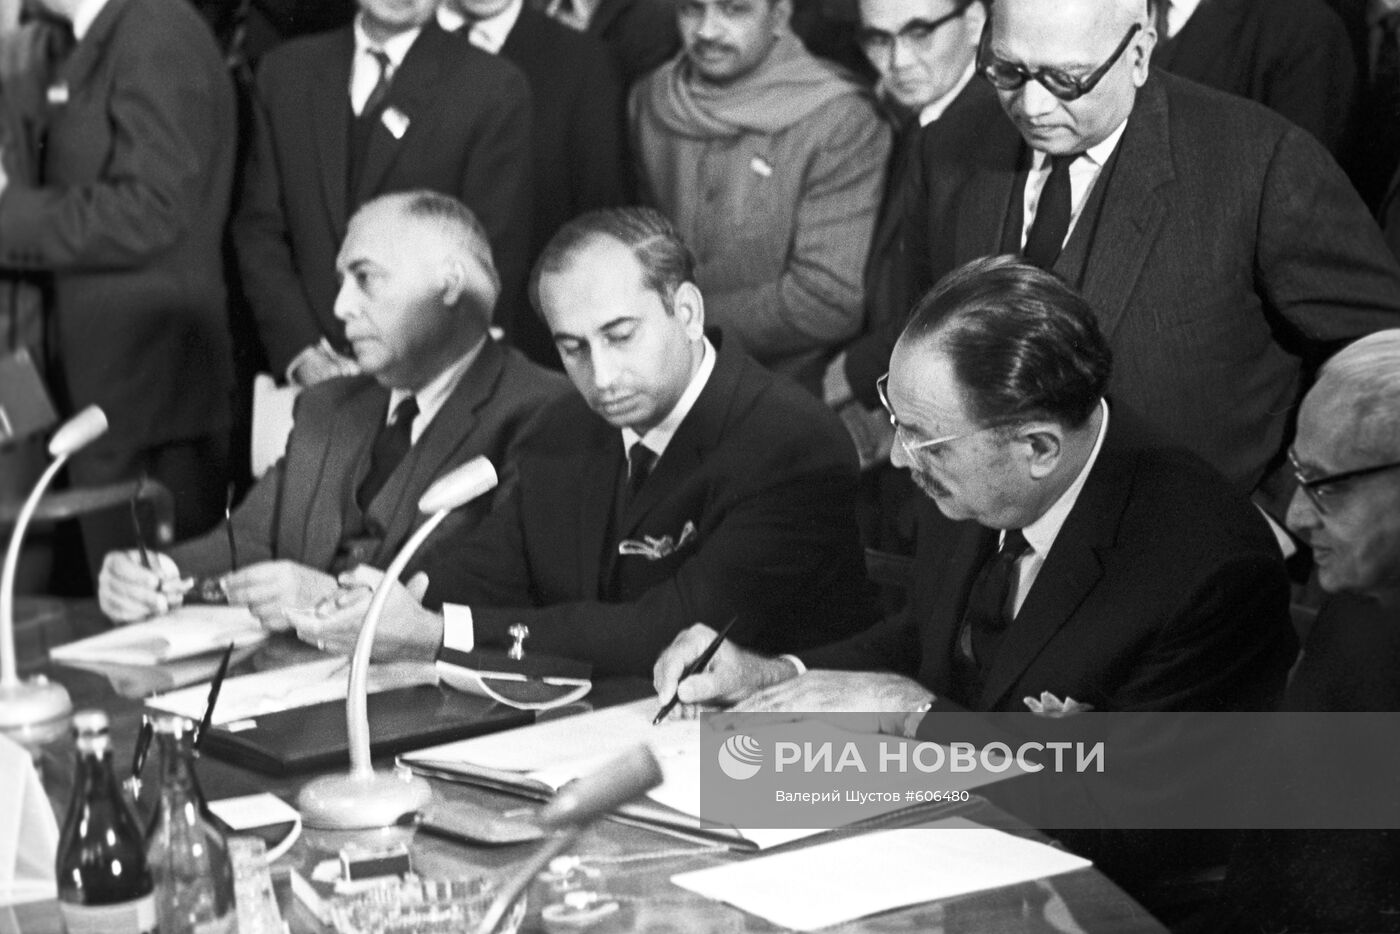 Подписание Ташкентской декларации